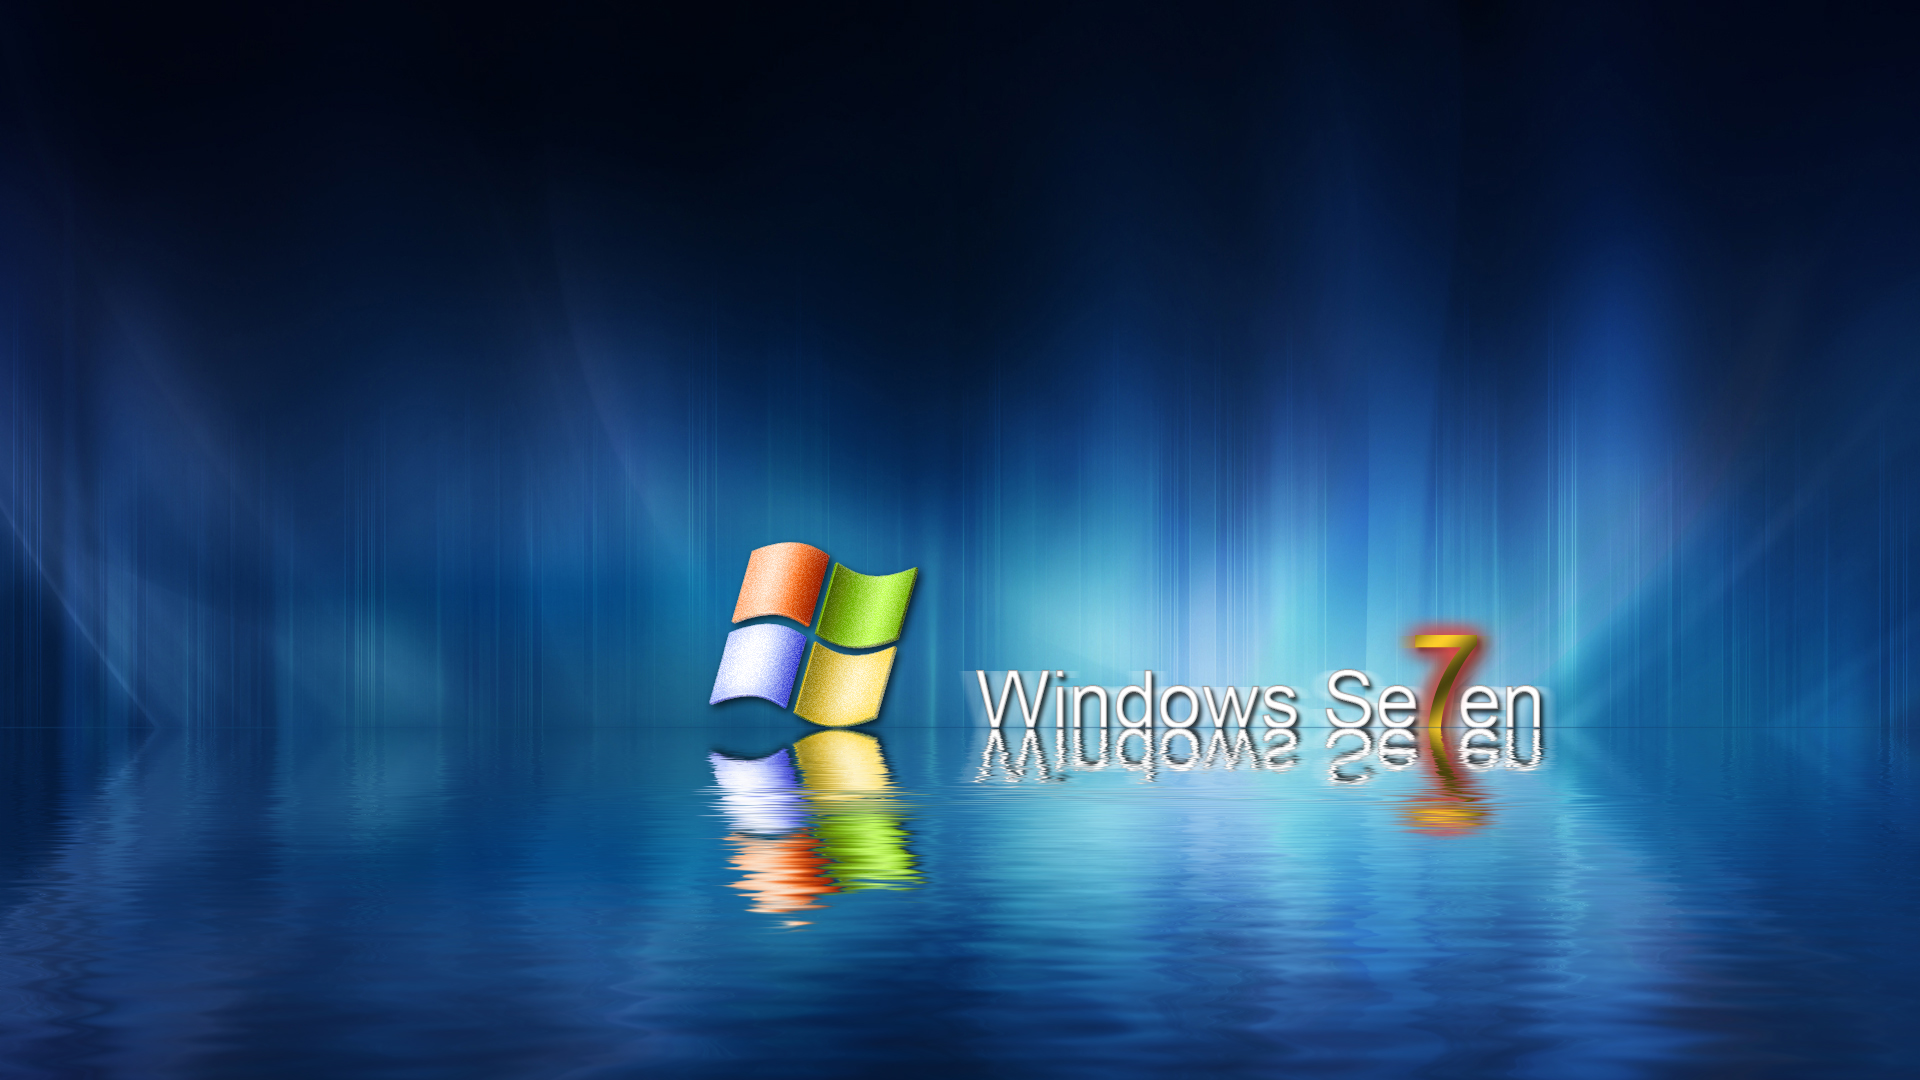 Фоны рабочего стола windows изменить. Фоновые изображения для рабочего стола Windows 7. Виндовс 7. Обои Windows 7. Красивая заставка виндовс.